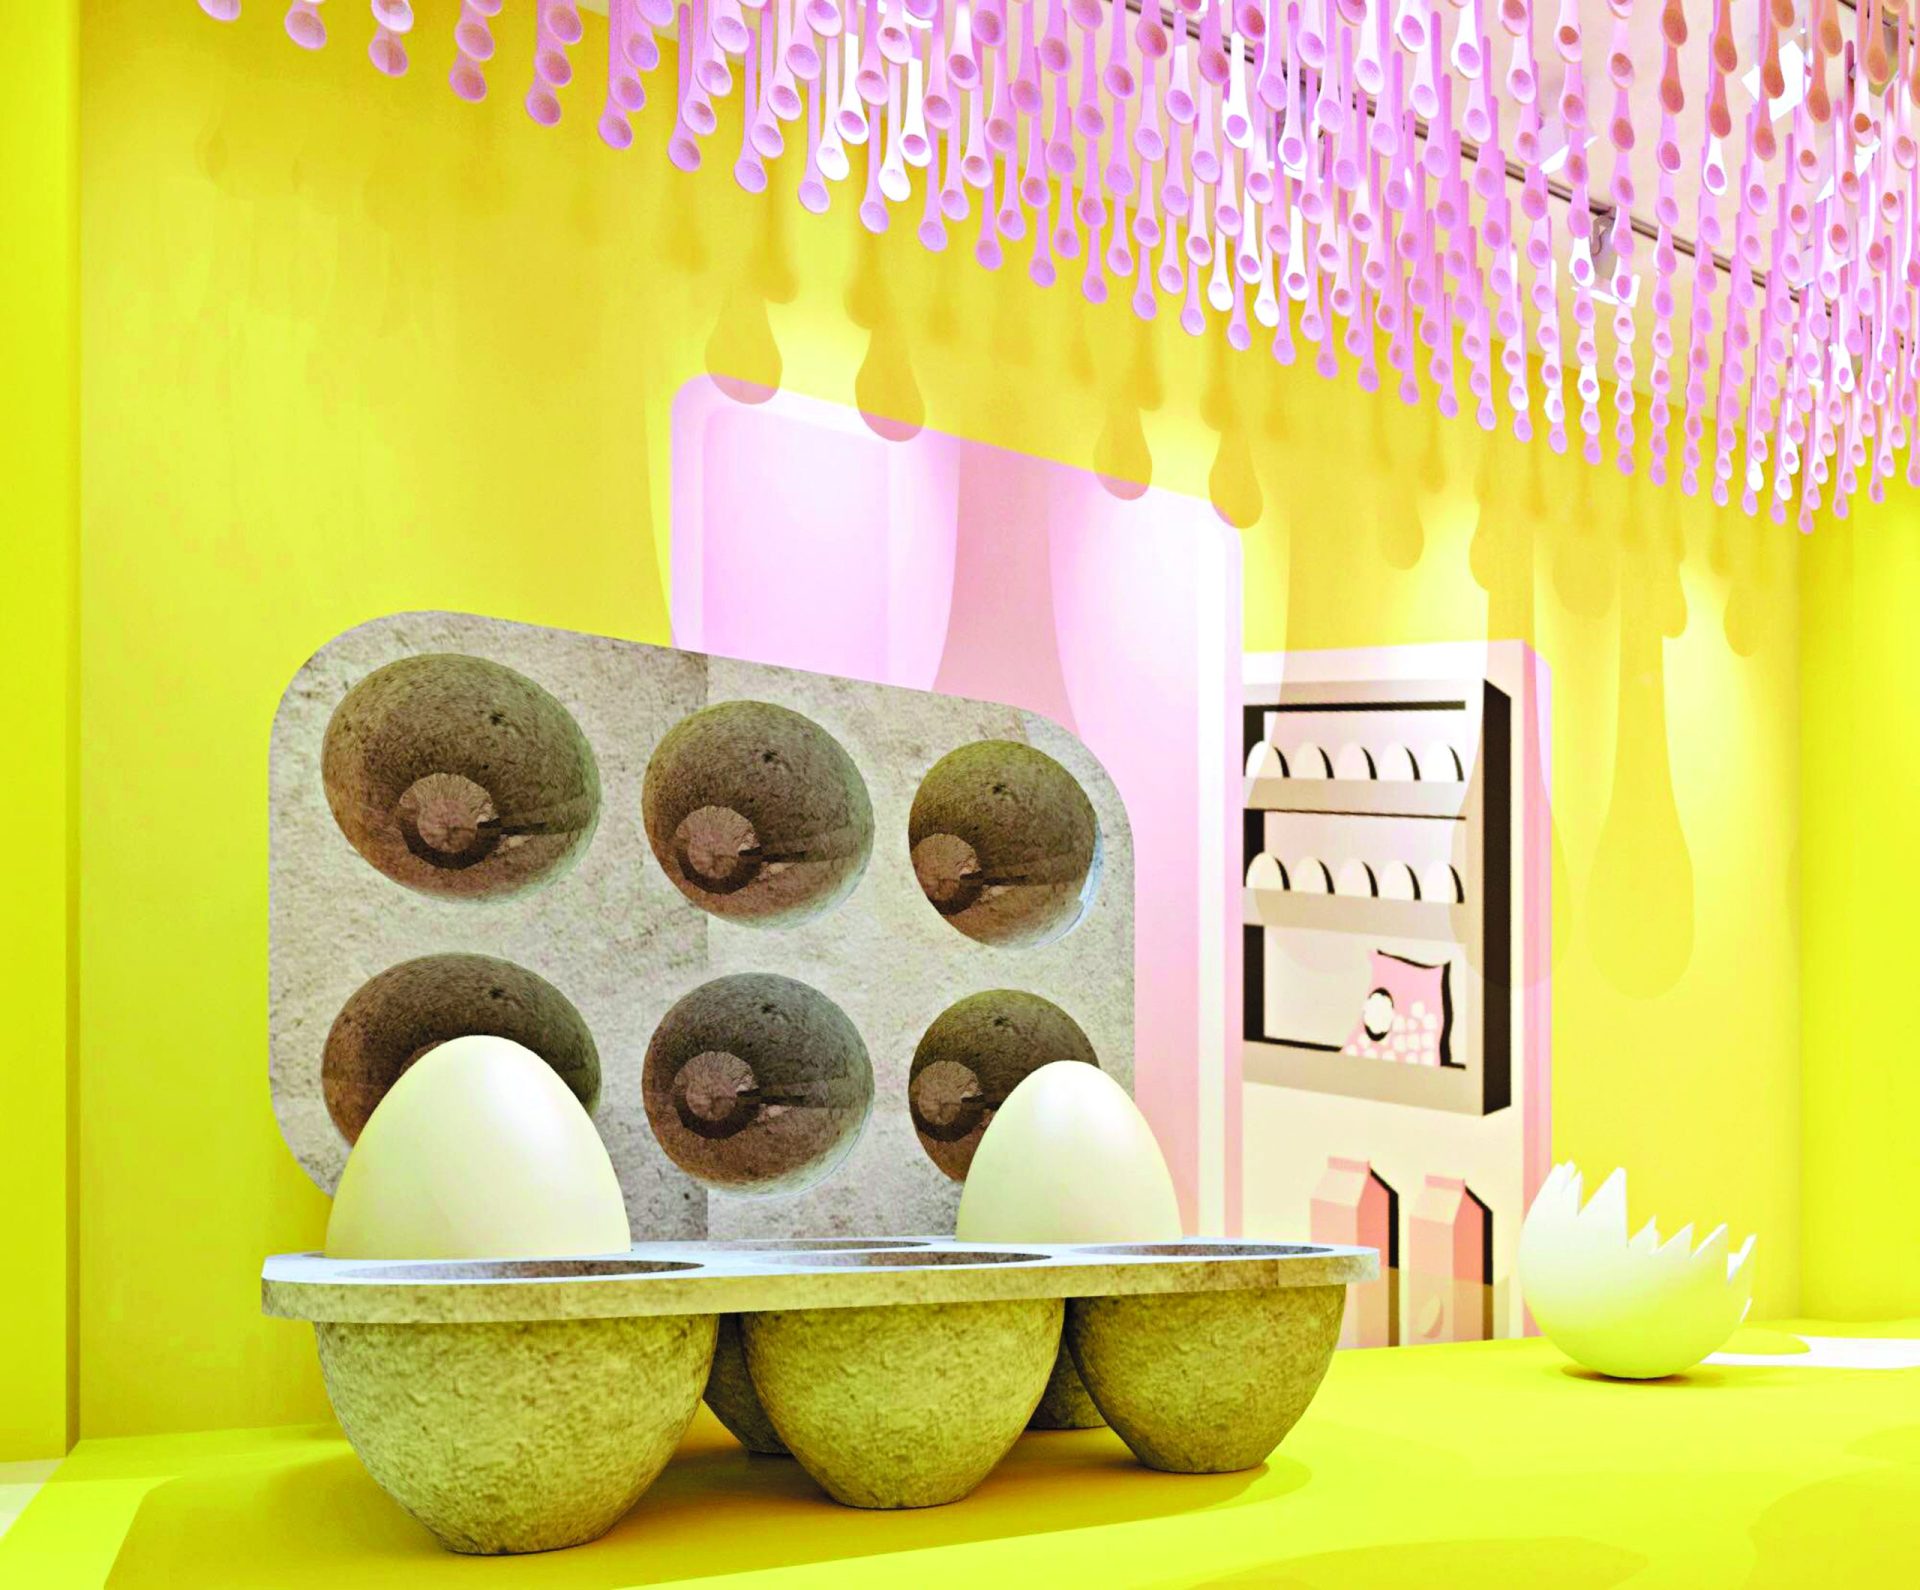 Museus de ovos, gomas e até de pizzas feitos à medida do Instagram